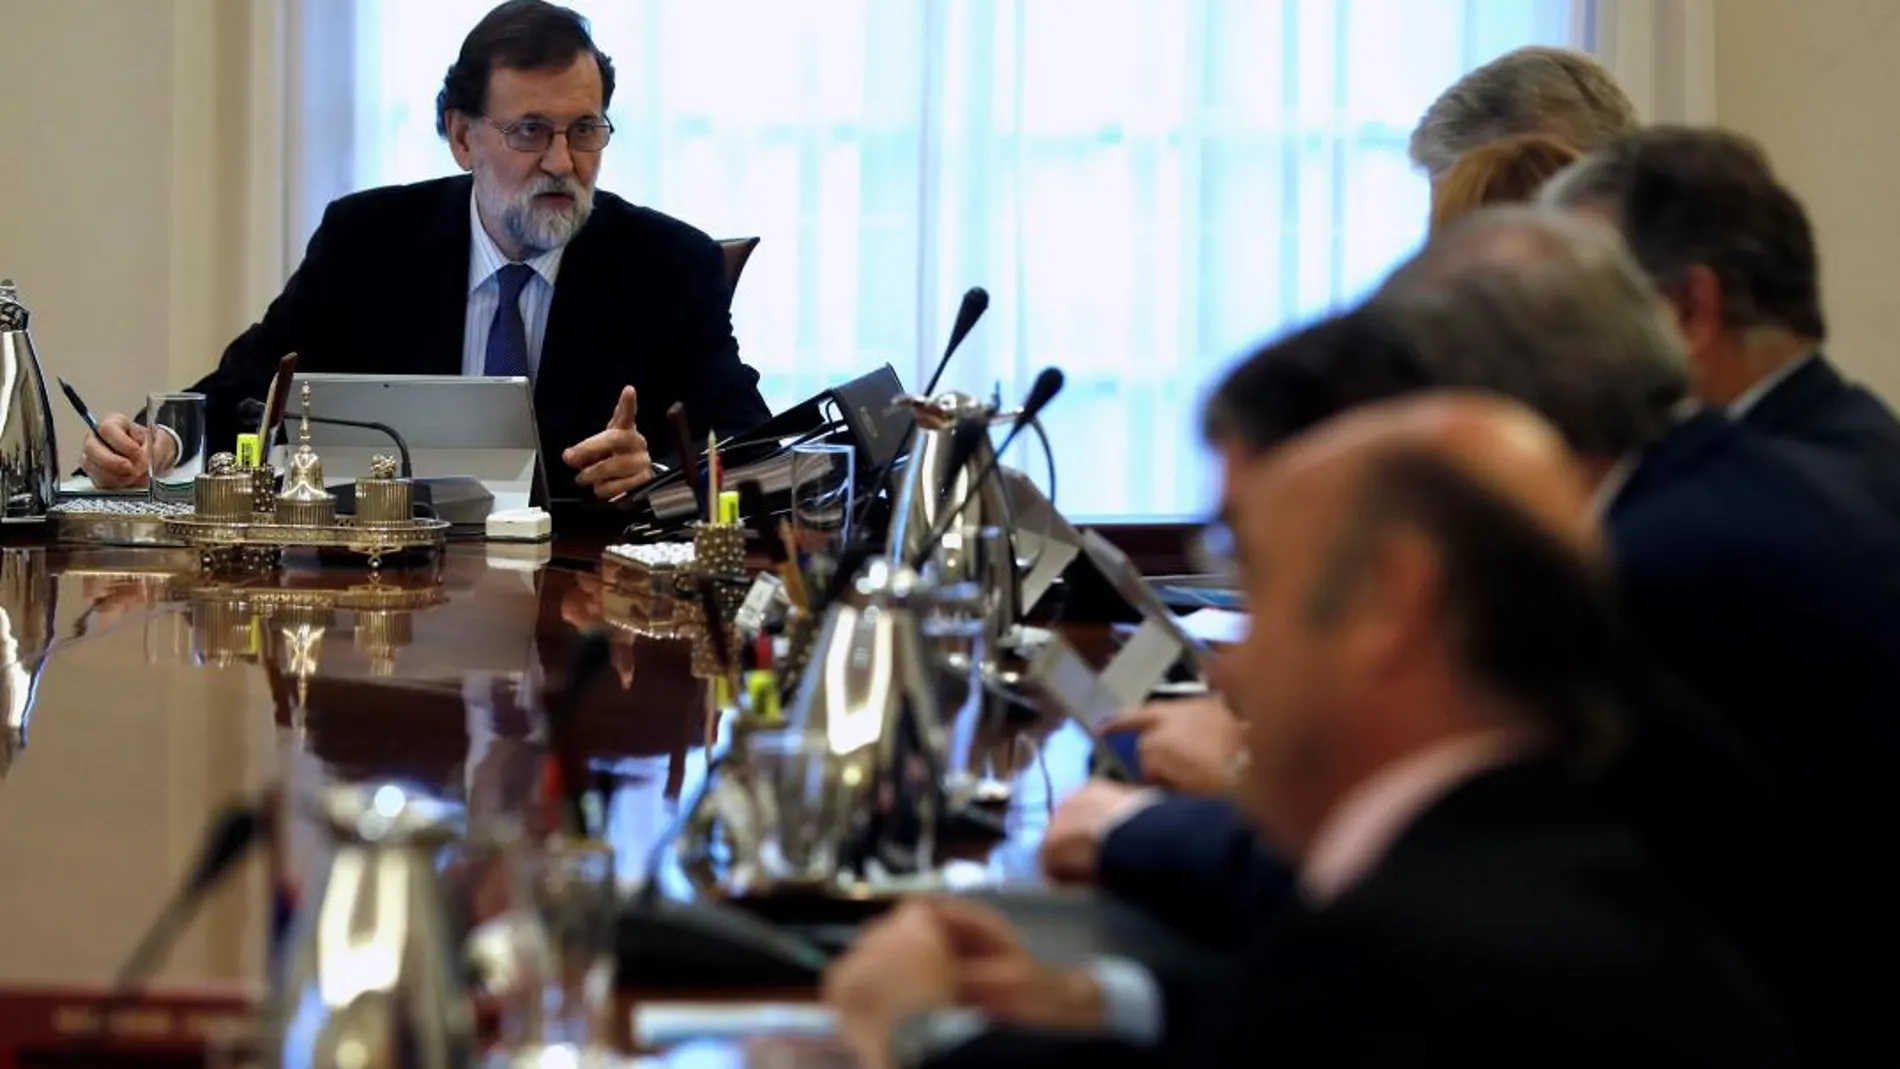 El jefe del Ejecutivo, Mariano Rajoy, conversa con la vicepresidenta, Soraya Sáenz de Santamaría, durante una reunión del Consejo de Ministros/Efe